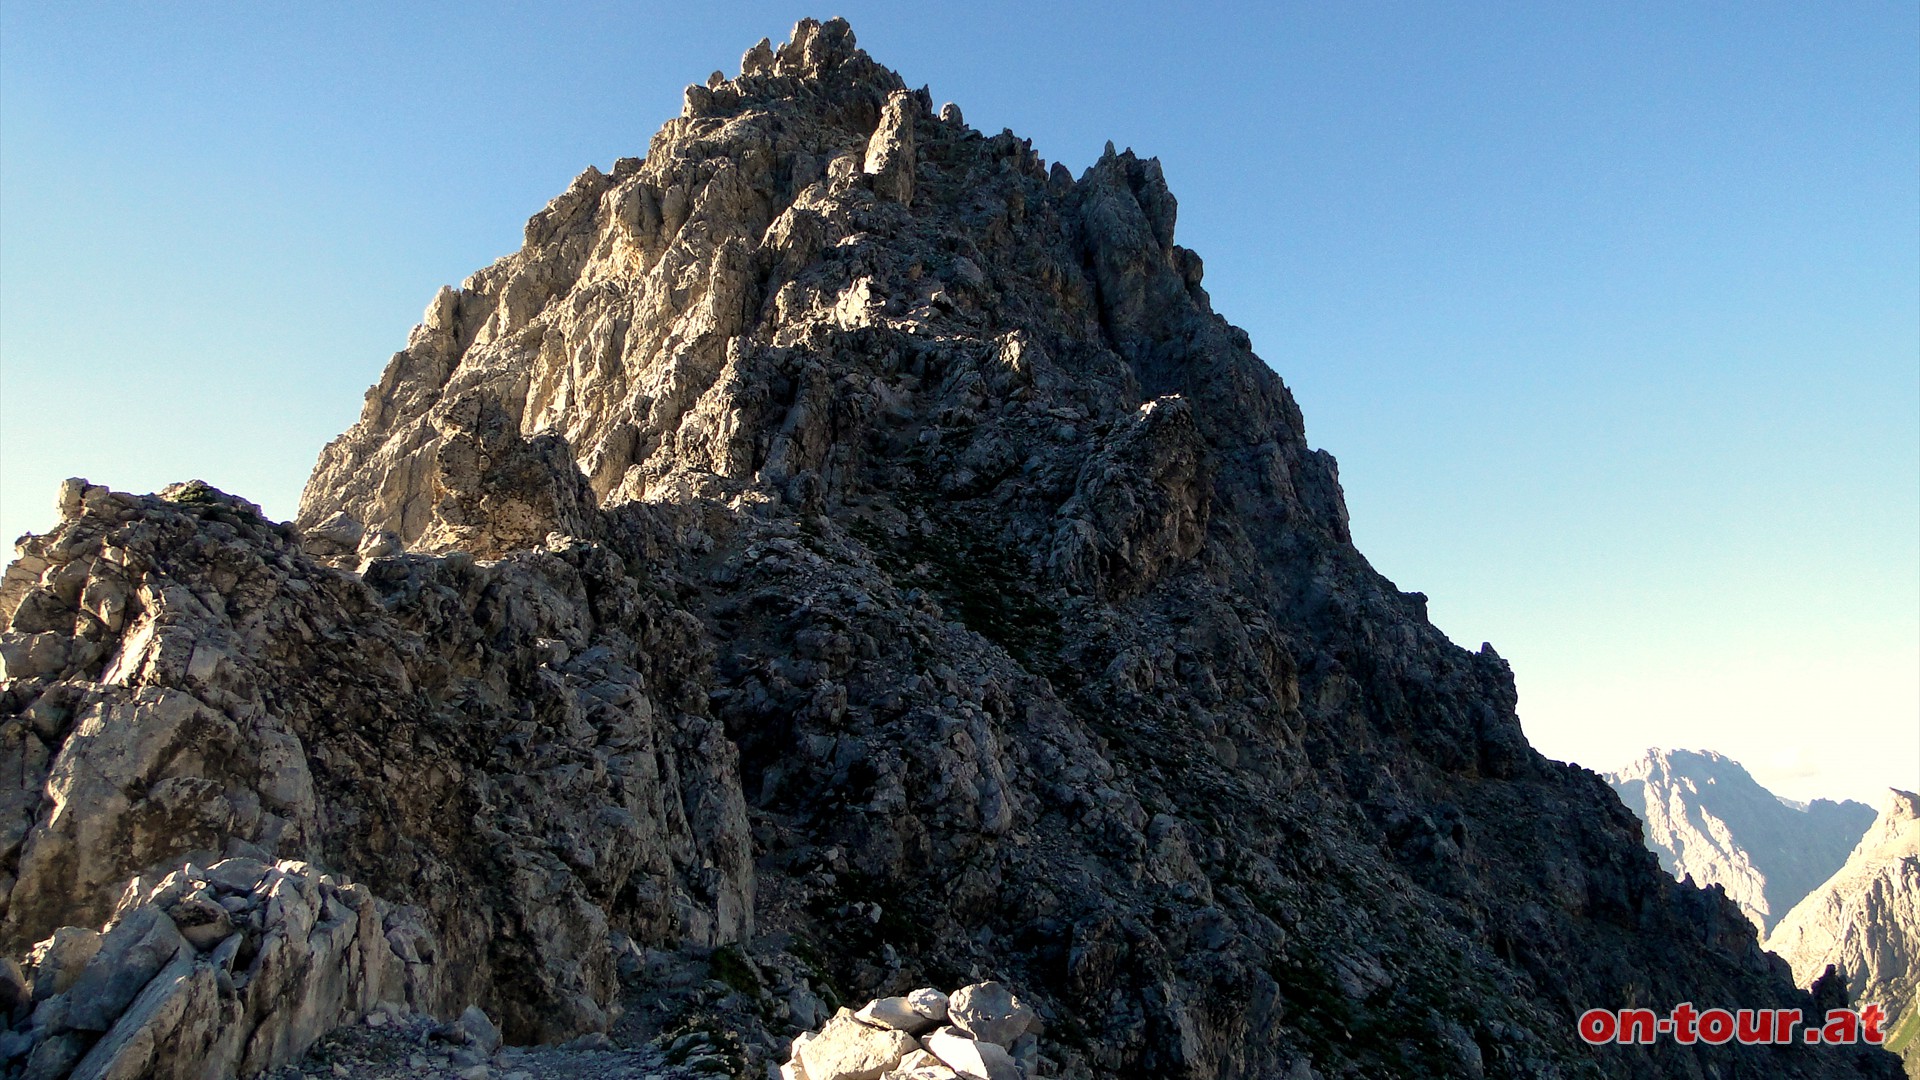 Der Aufstieg ber den Grat ist schwierig (Alpine Erfahrung, Trittsicherheit und Schwindelfreiheit - leichte Kletterei).